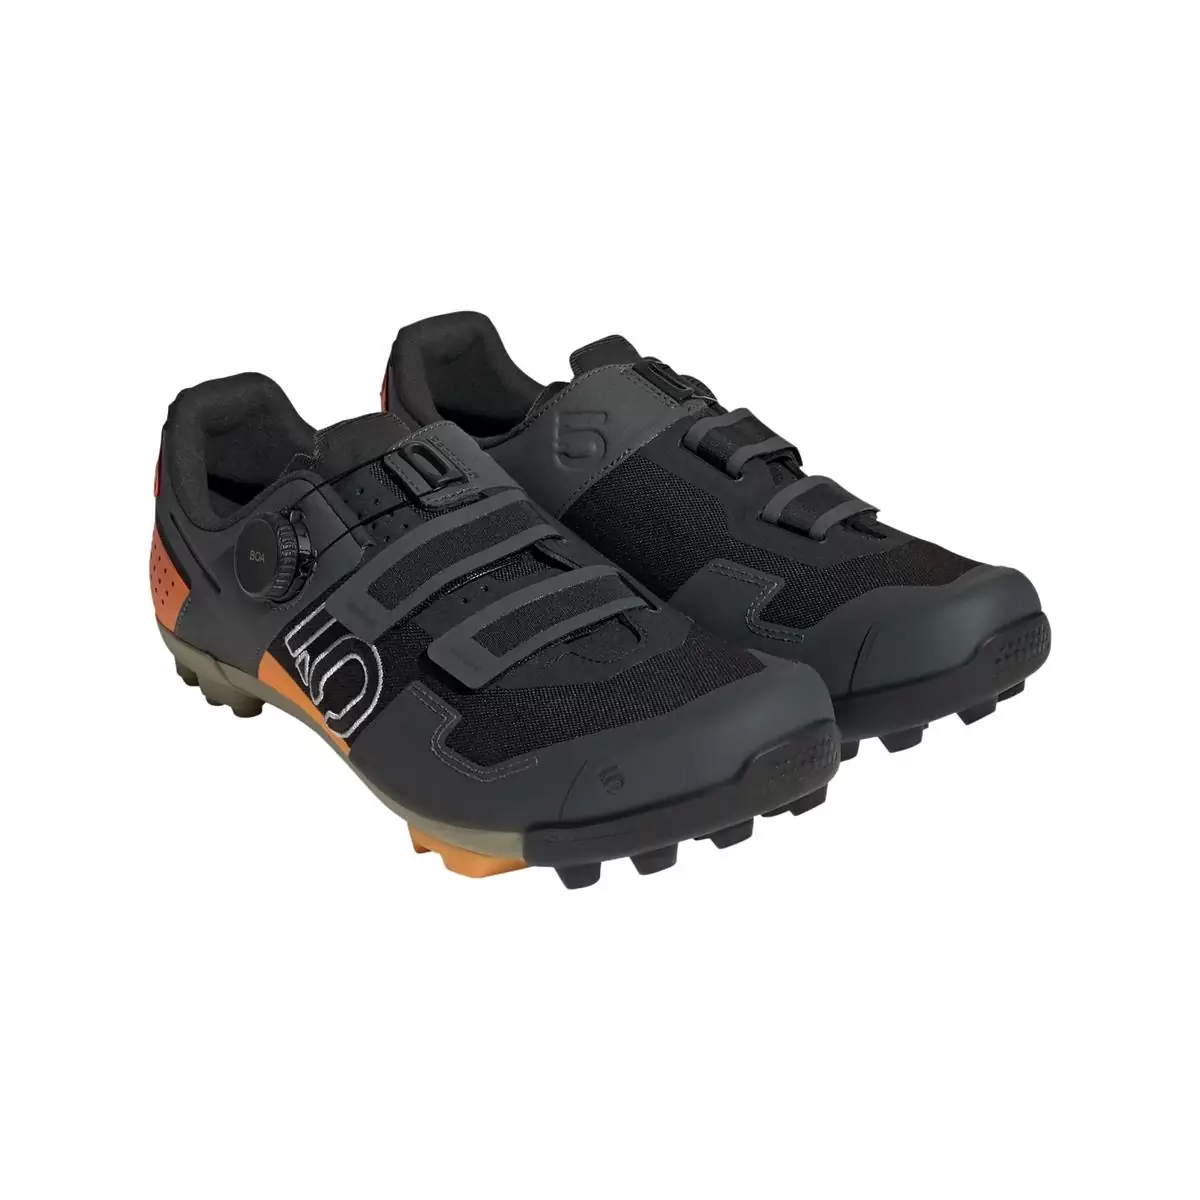 Zapatillas MTB Clip 5.10 Kestrel Boa Negro/Naranja Talla 42.5 #1